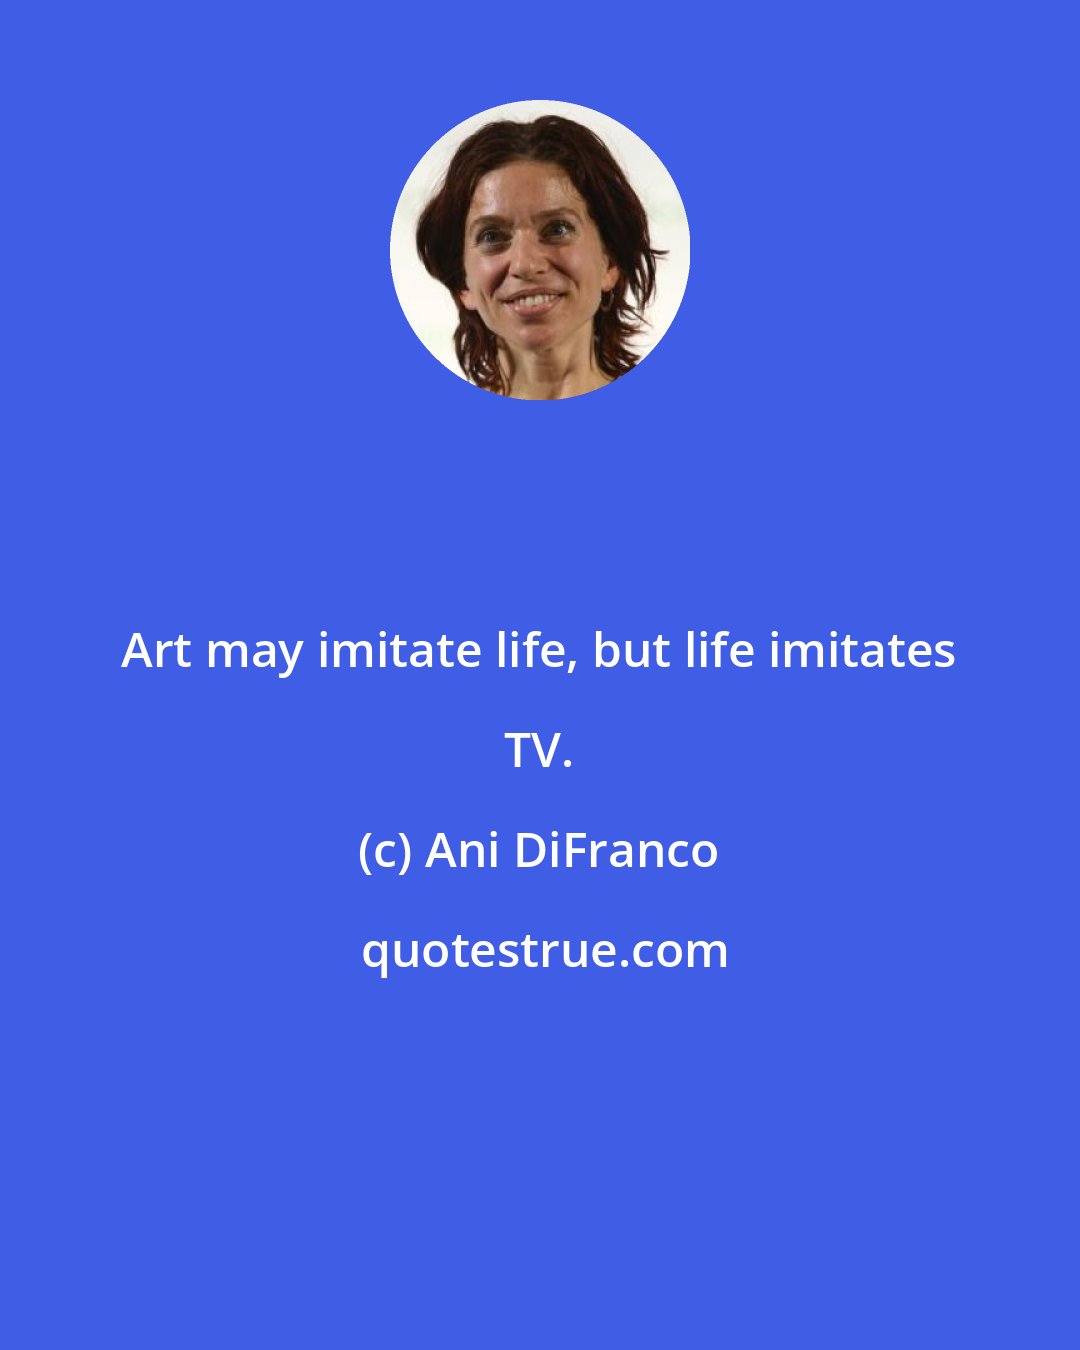 Ani DiFranco: Art may imitate life, but life imitates TV.